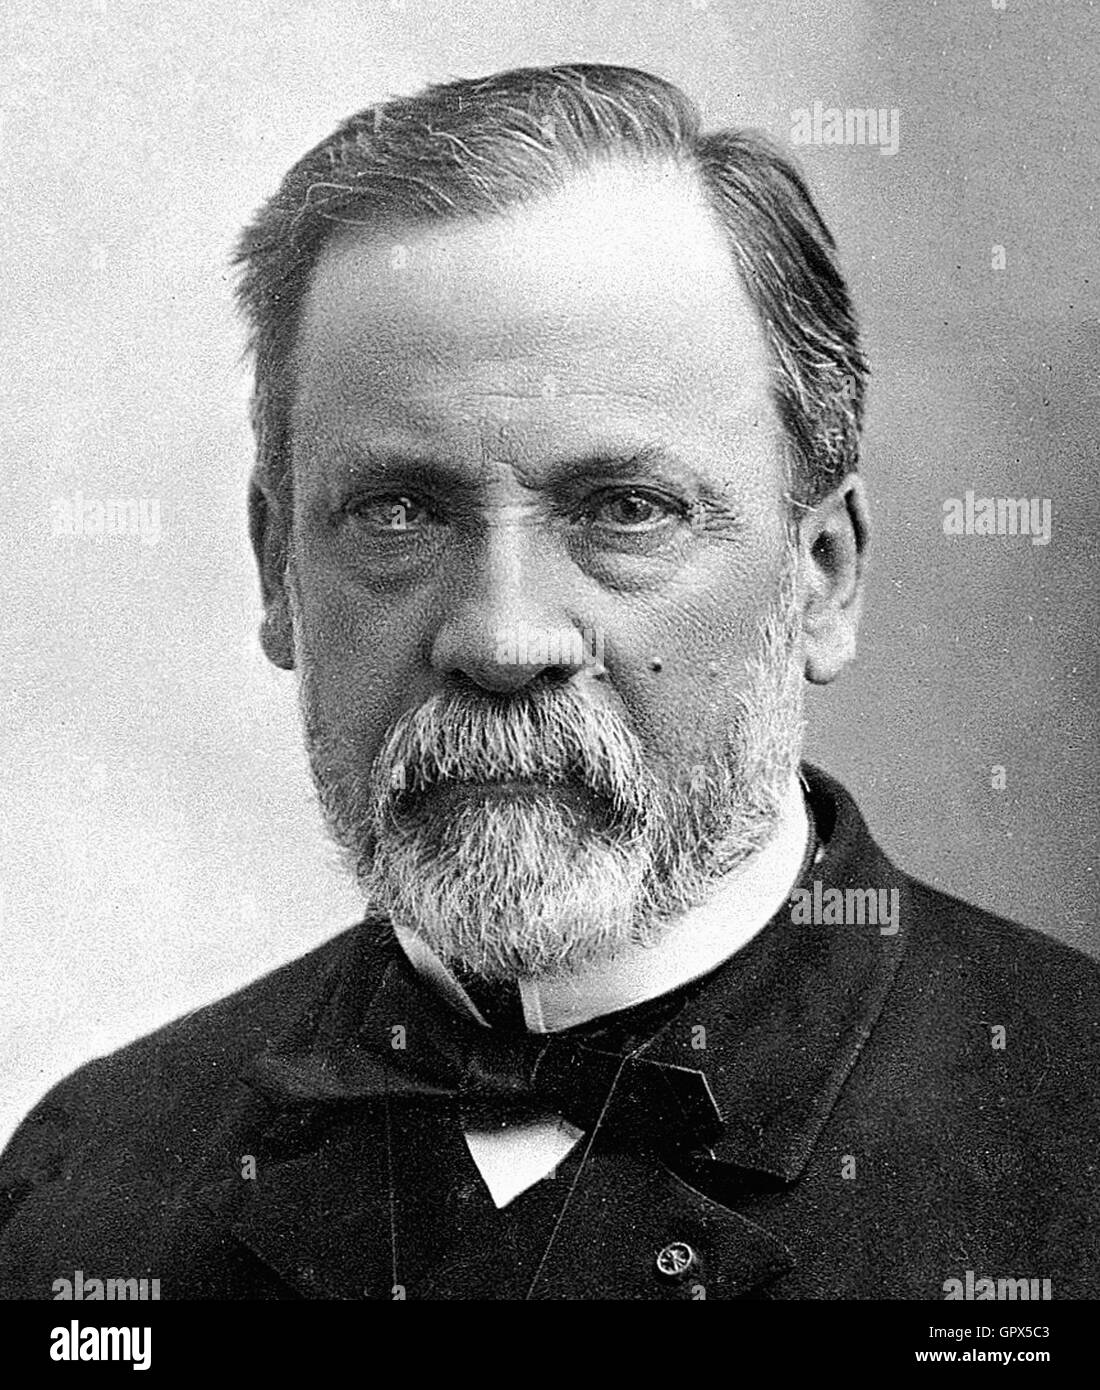 Louis Pasteur Photographic portrait Stock Photo